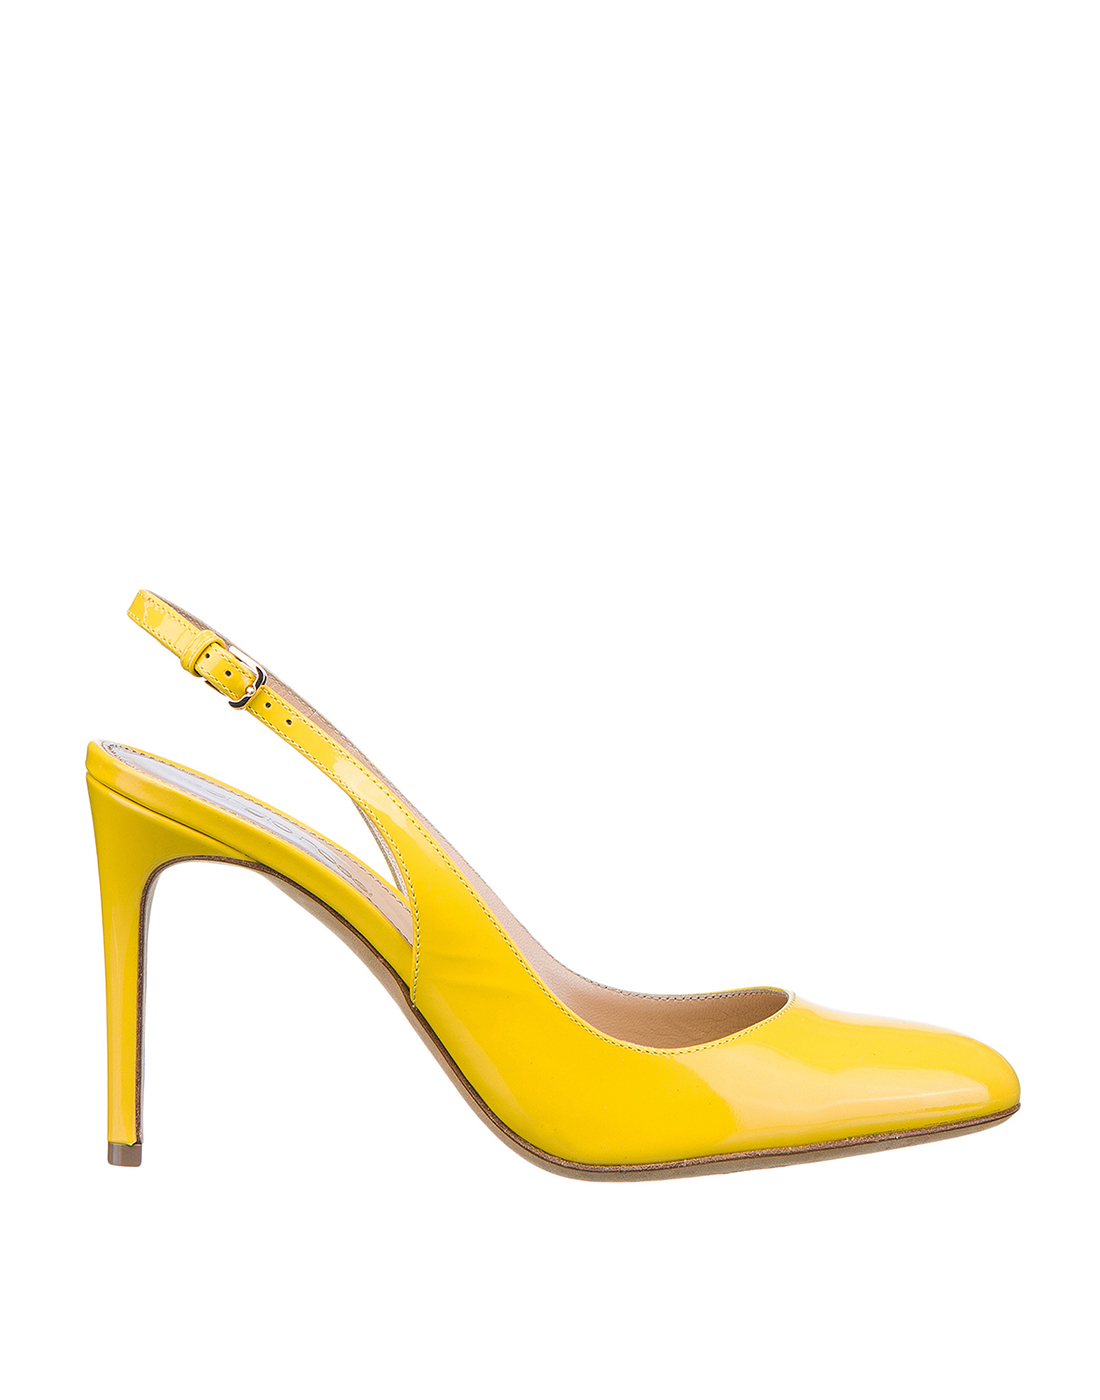 Босоножки желтые женские Sergio Rossi S72571-1